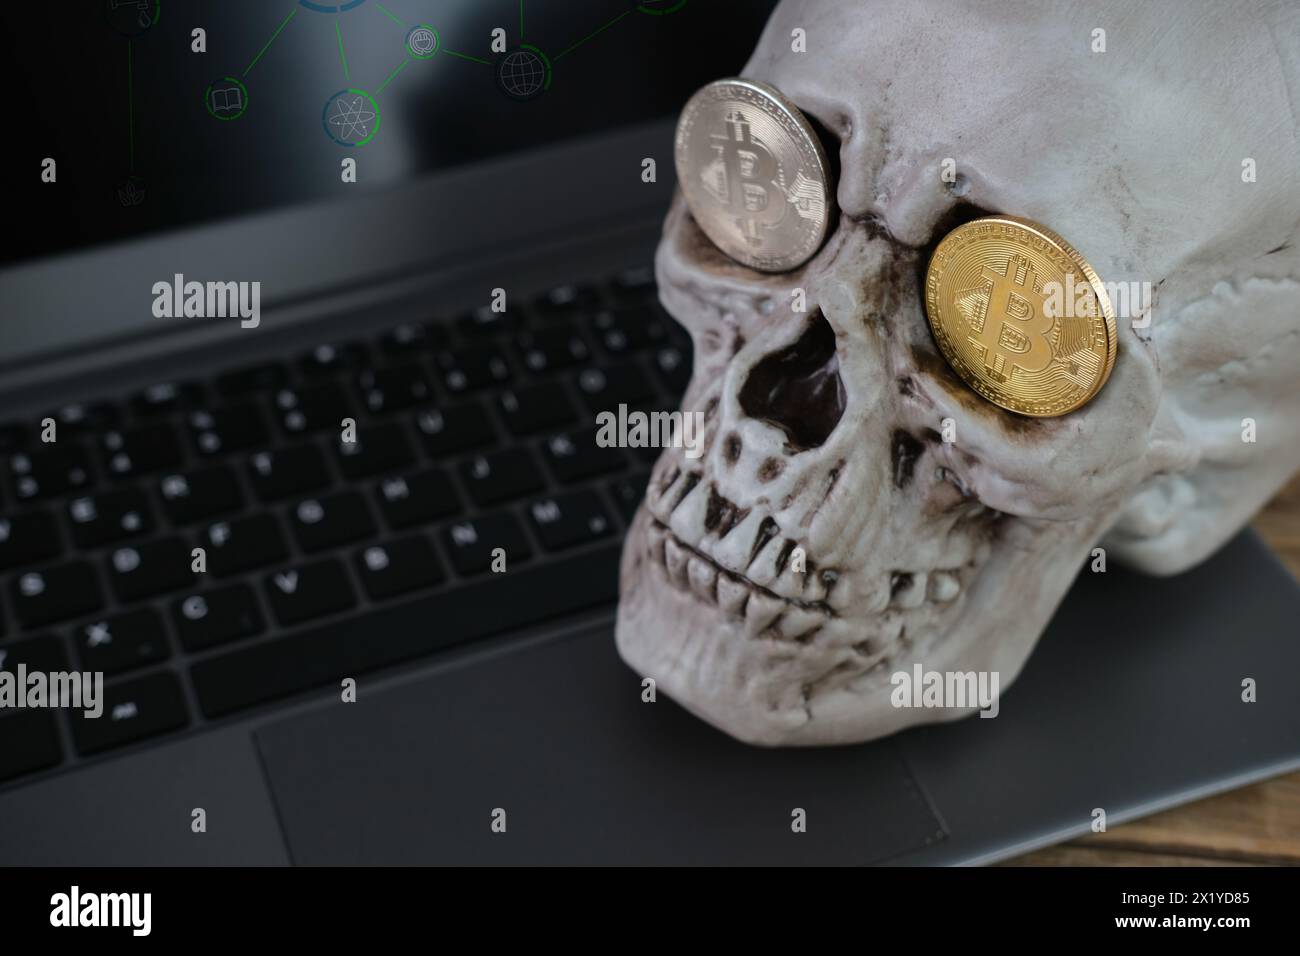 teschio umano su una tastiera portatile, bitcoin metallici nelle prese degli occhi, il concetto di mining di criptovaluta, la transitorietà della vita, l'inevitabilità Foto Stock